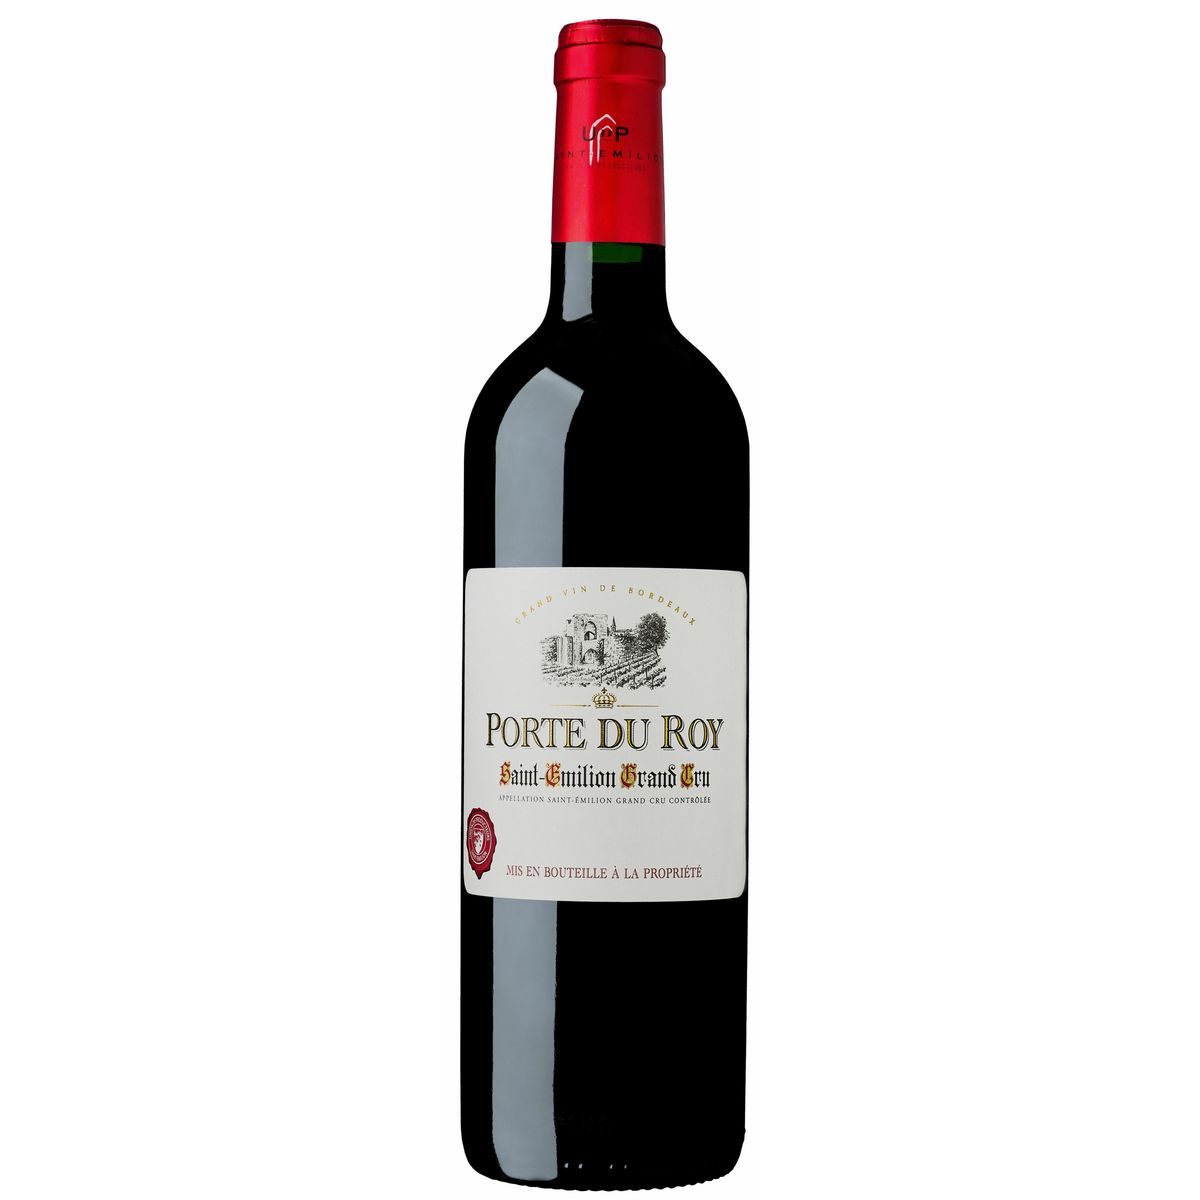 Vin rouge AOP Saint-Emilion Grand cru Porte du Roy 2018 75cl